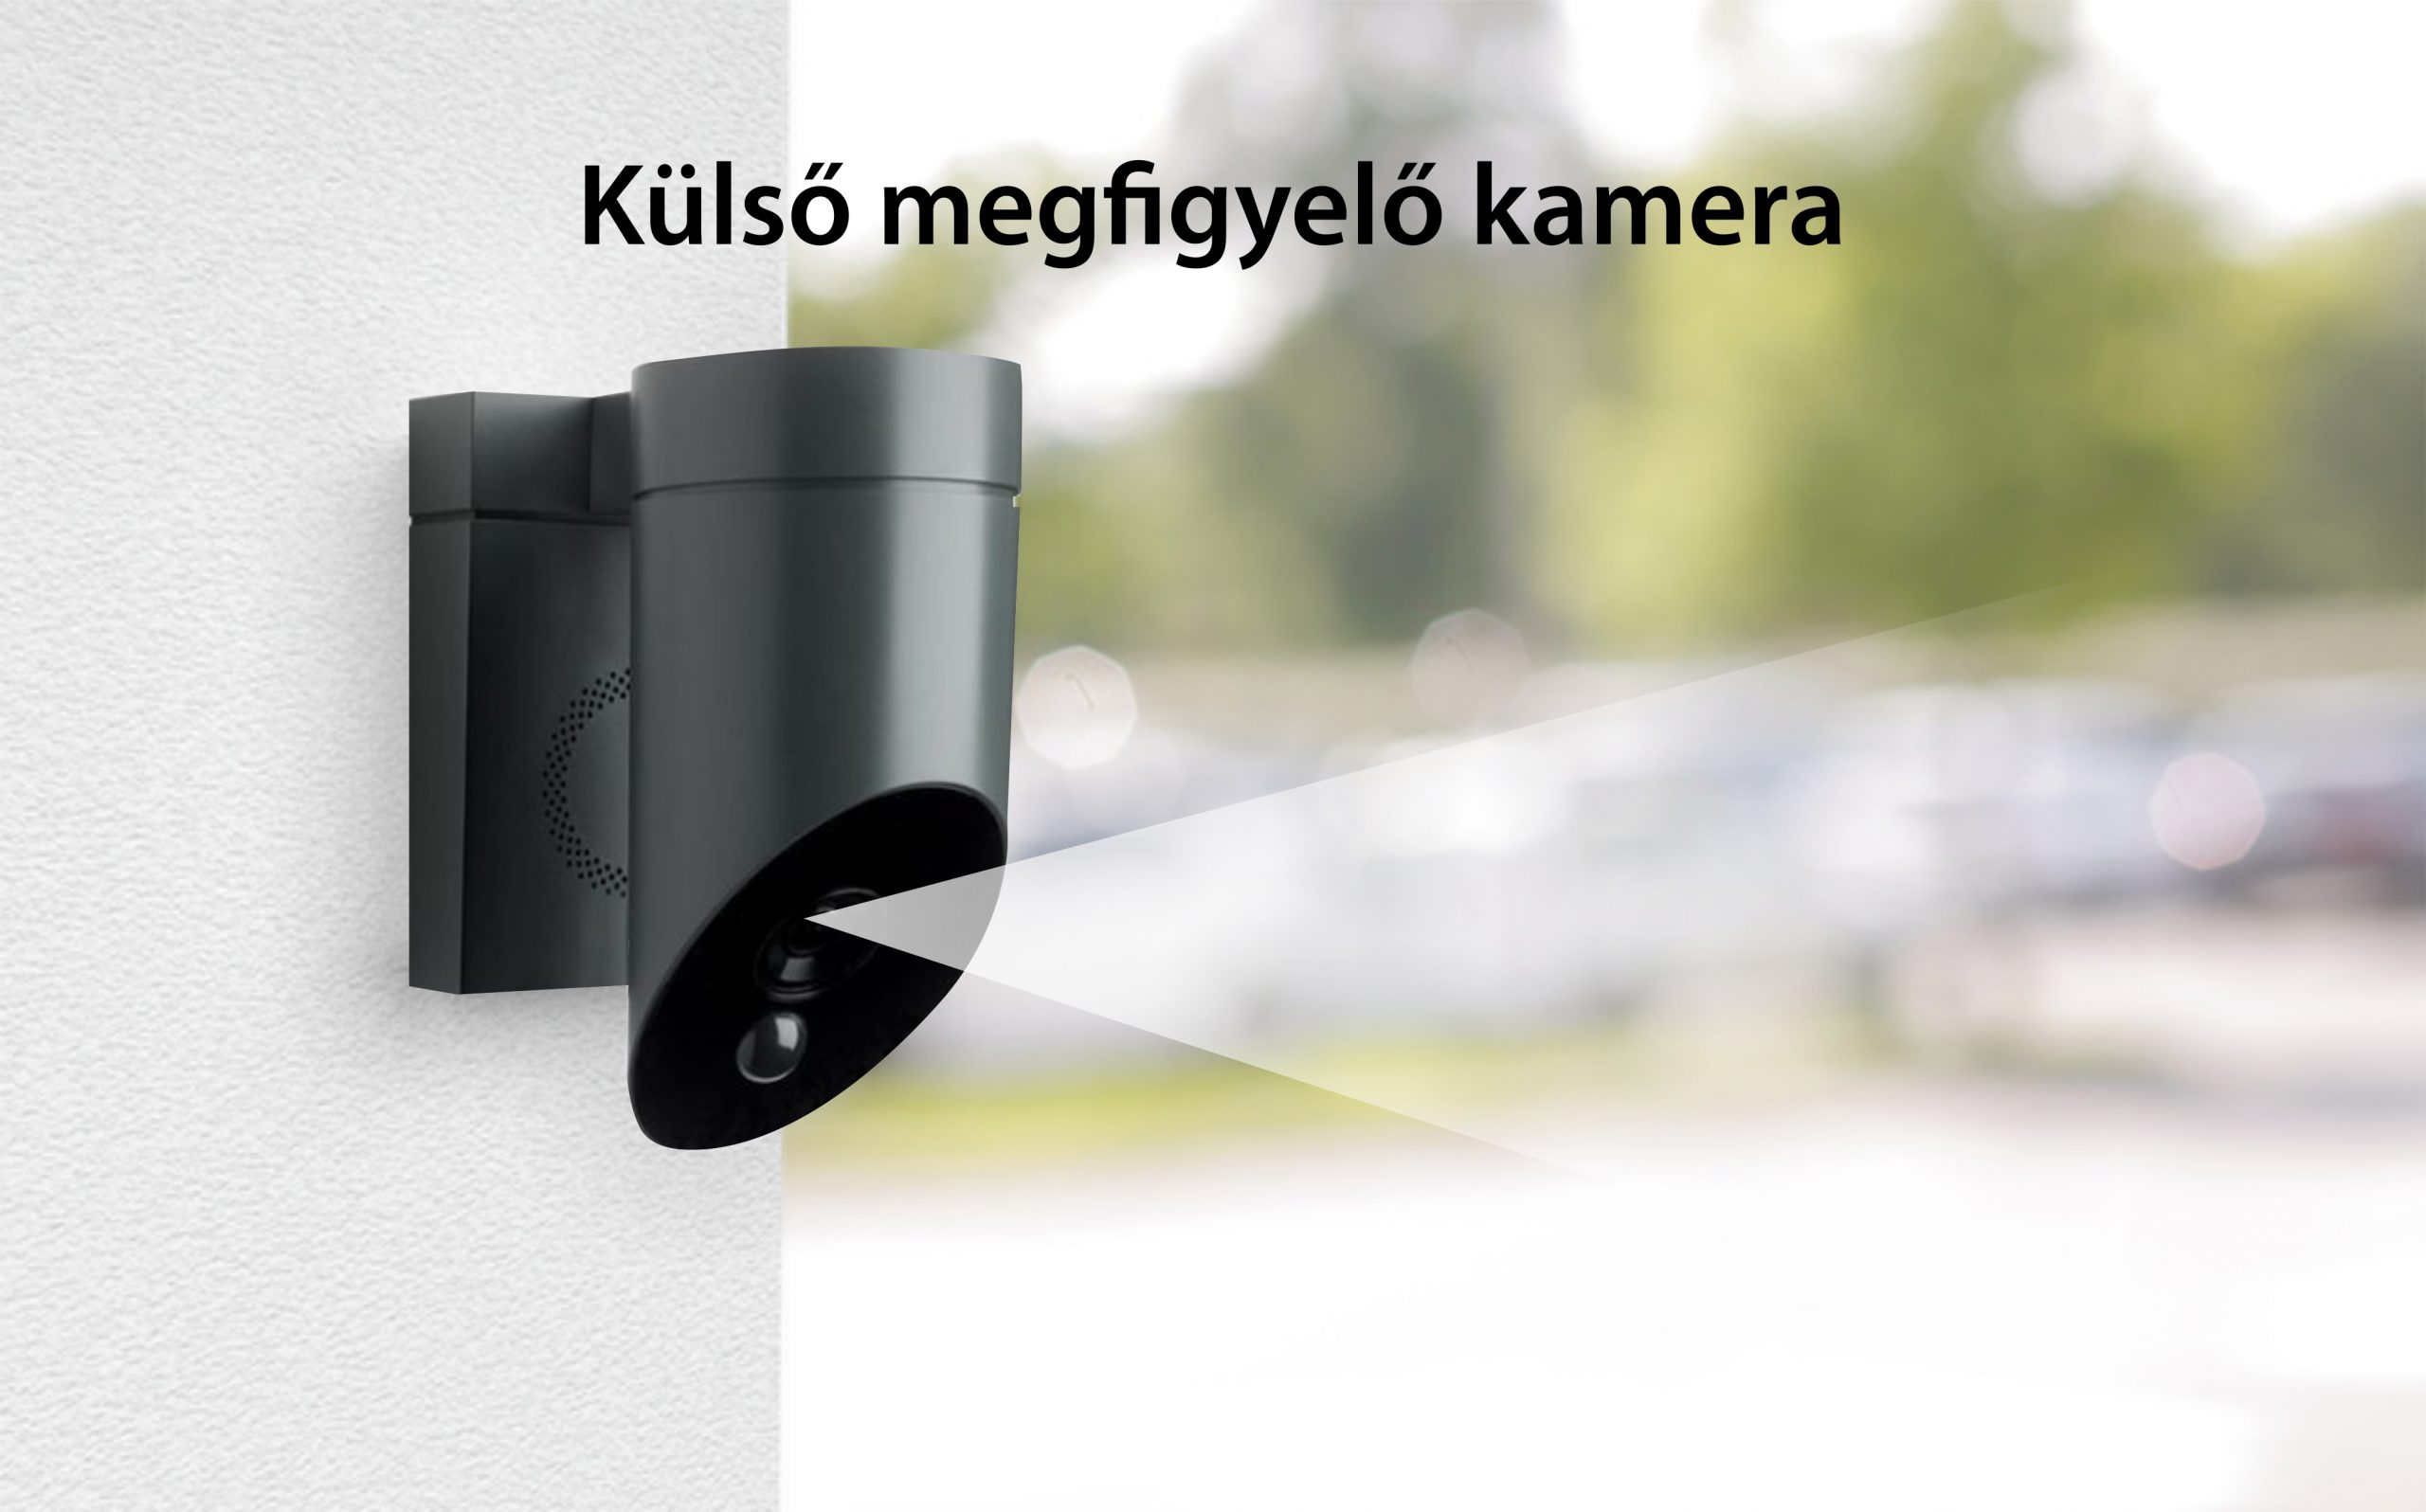 Kültéri Kamera Somfy, Wifi, 1080p Full HD, 110 dB Sziréna, Lehetséges csatlakoztatás meglévő lámpatesthez – Szürke